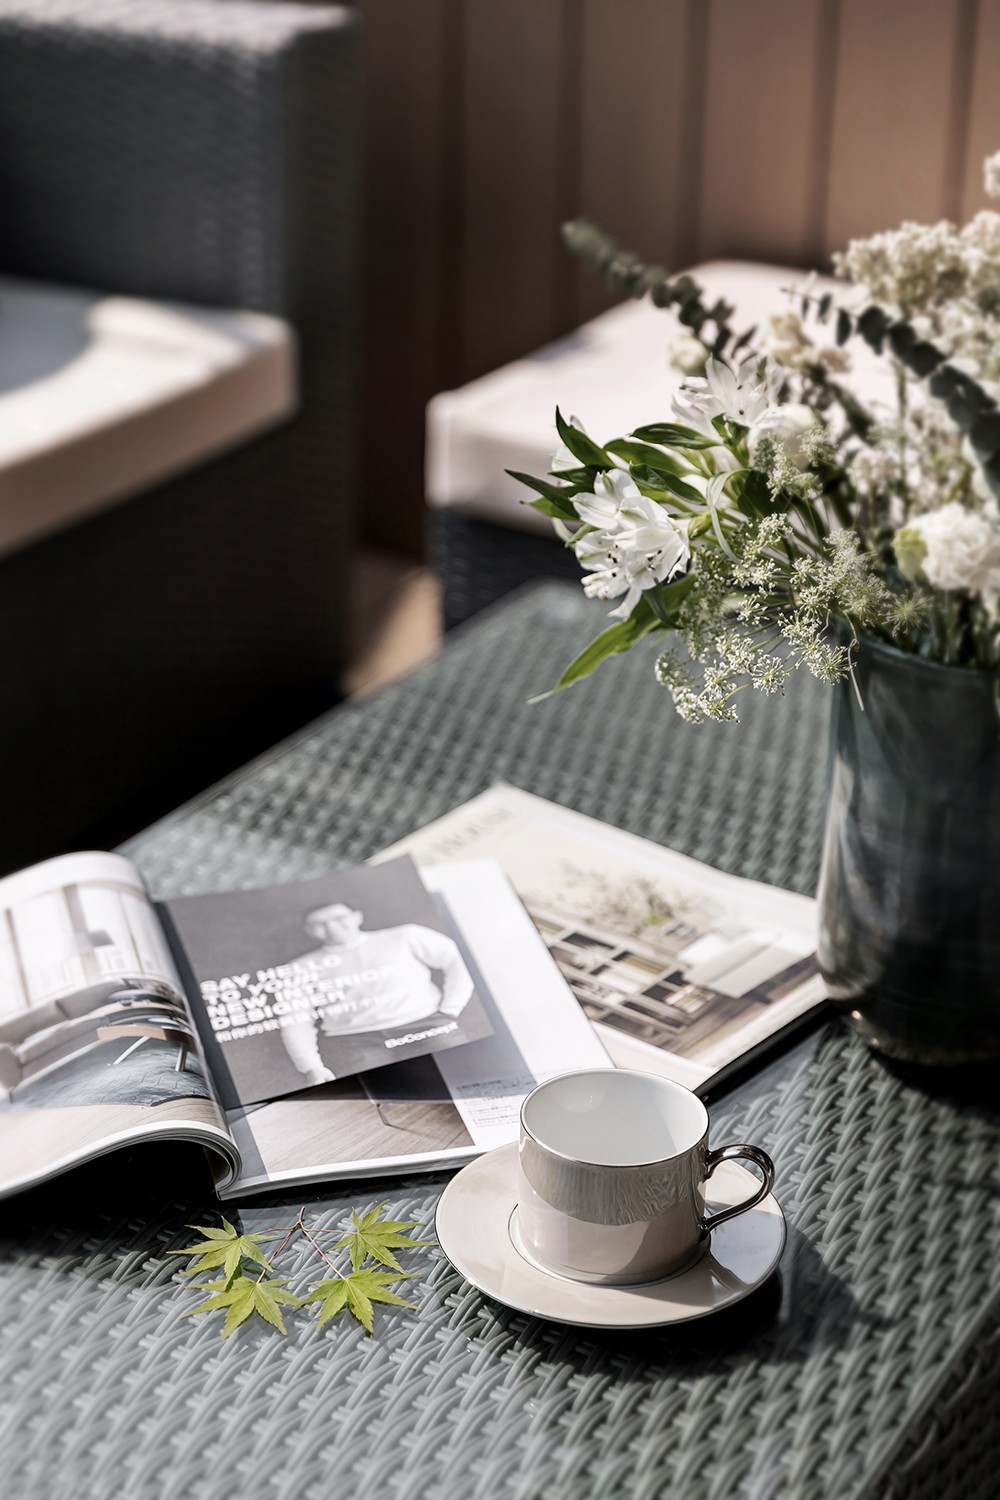 室外的小憩区域.阳光明媚的午后,一杯咖啡一本书,静享惬意时光.